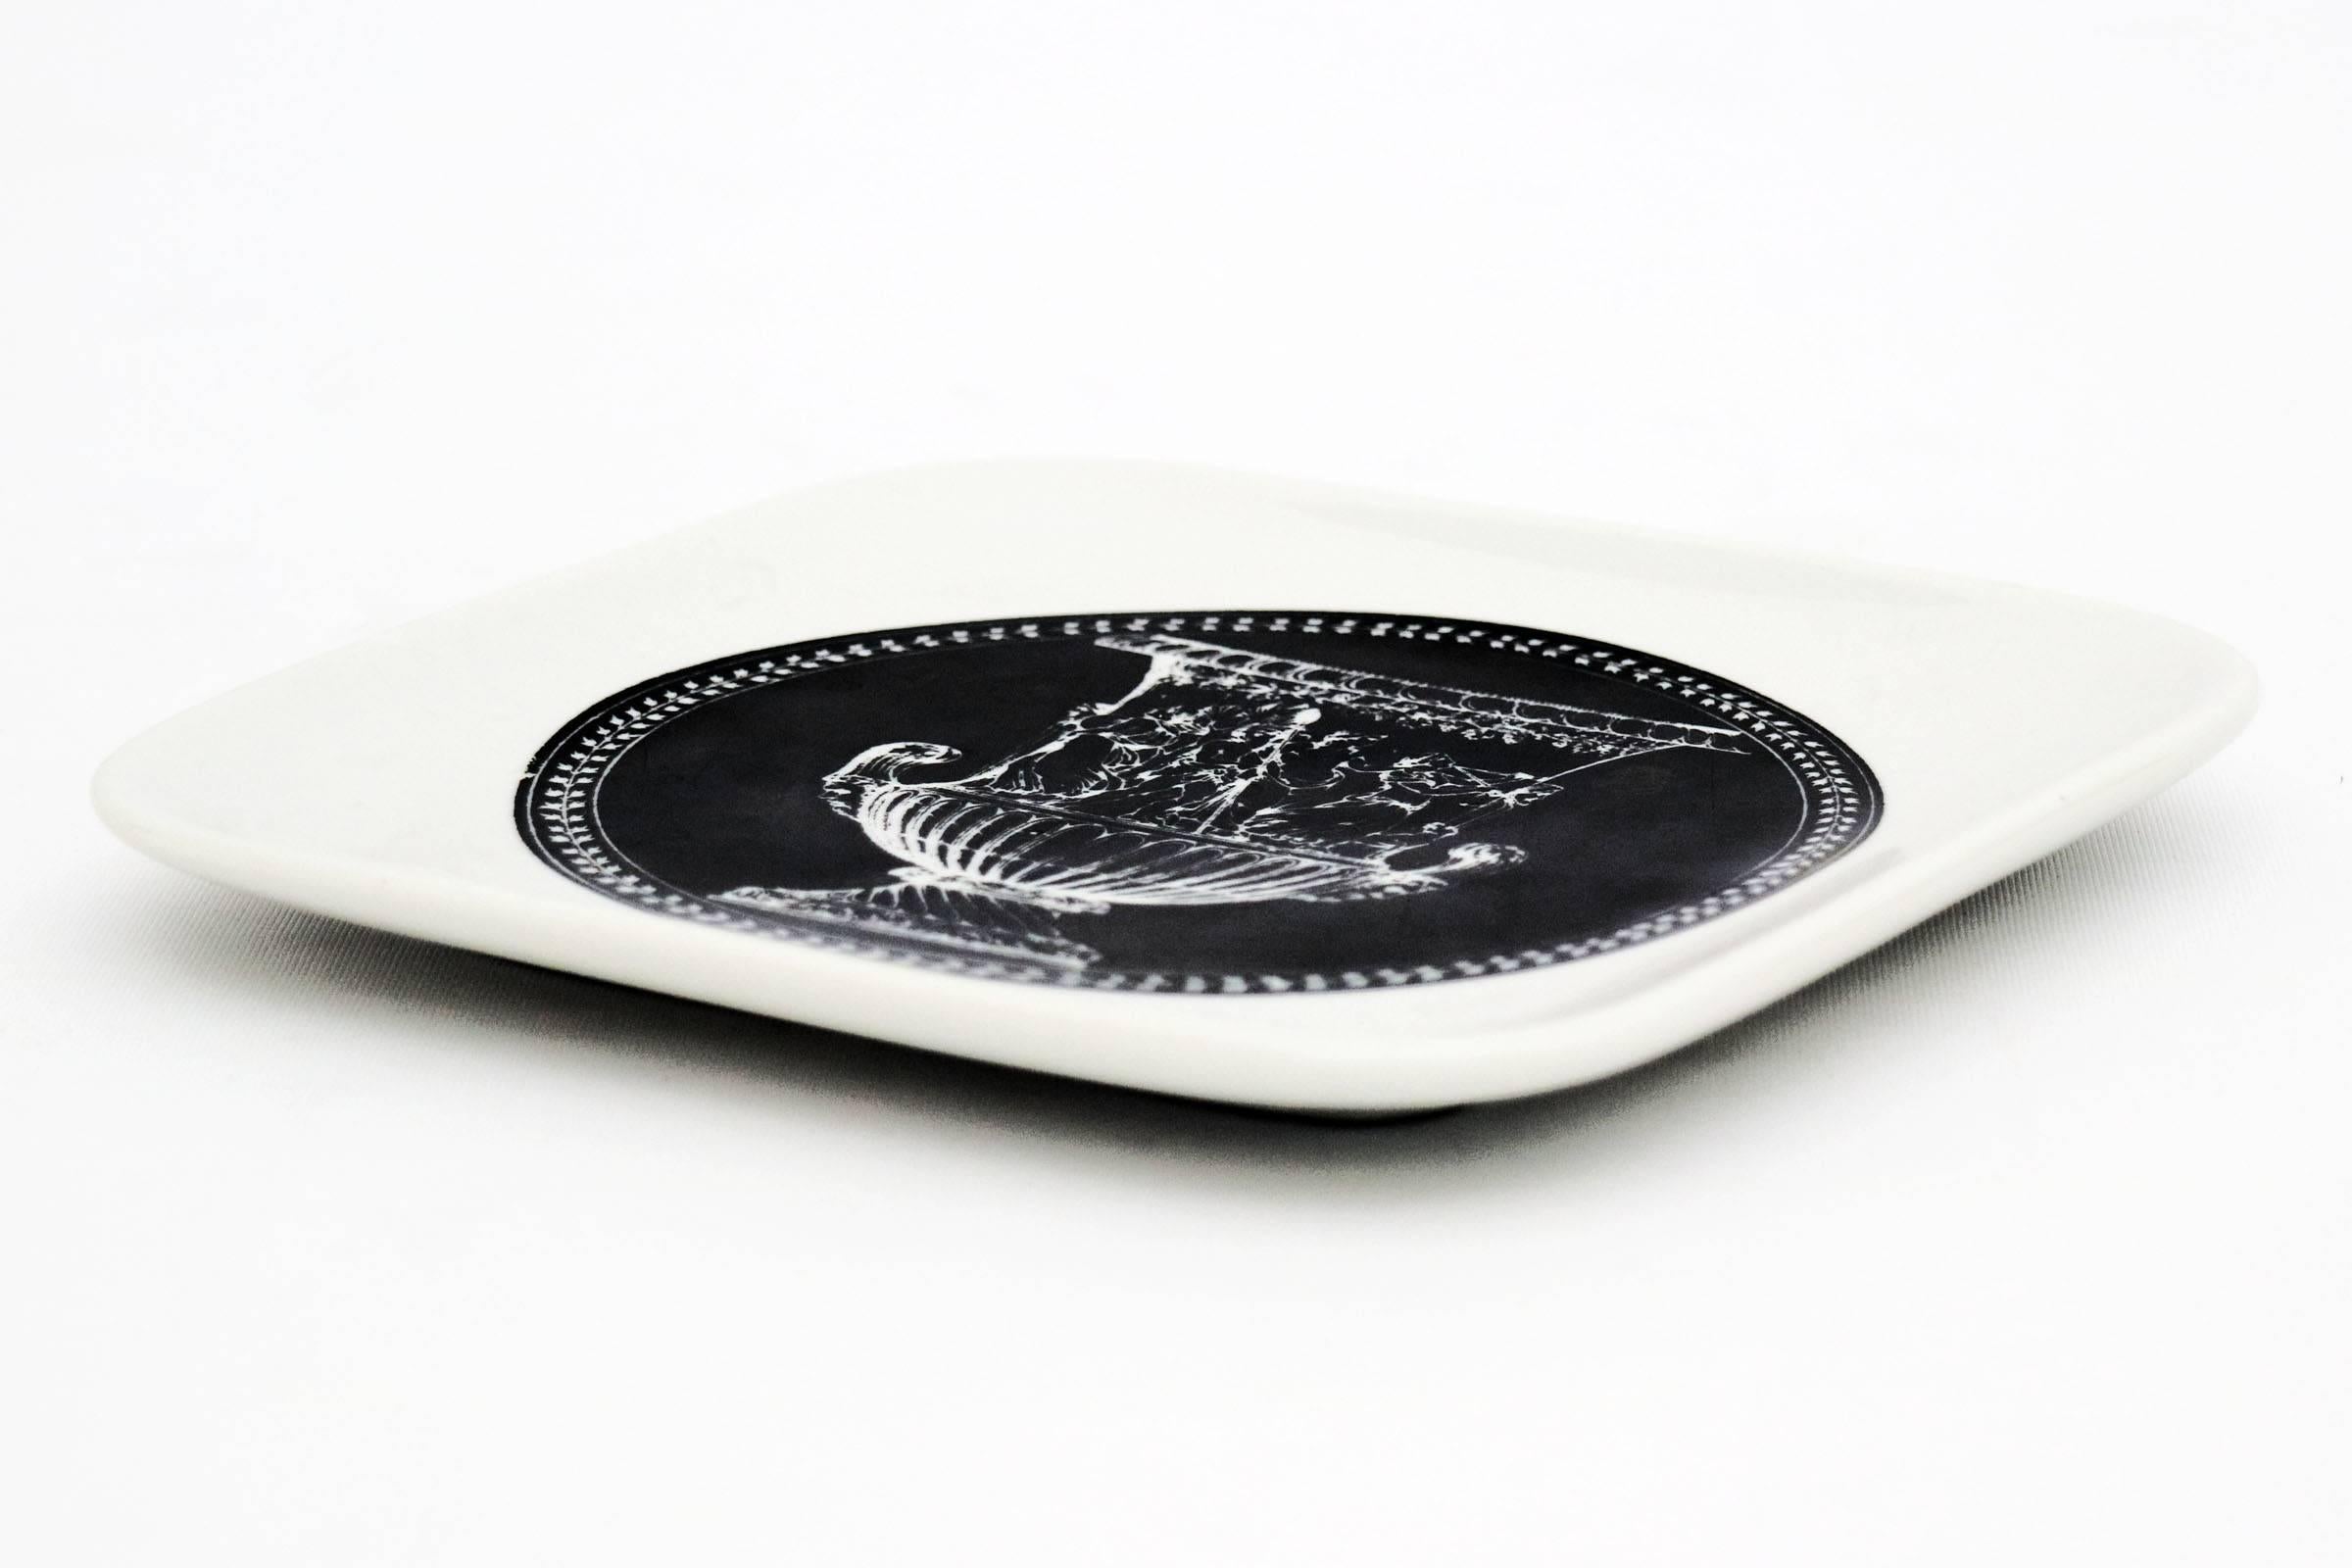 Fornasetti decorative dish. White and black ceramic dish.